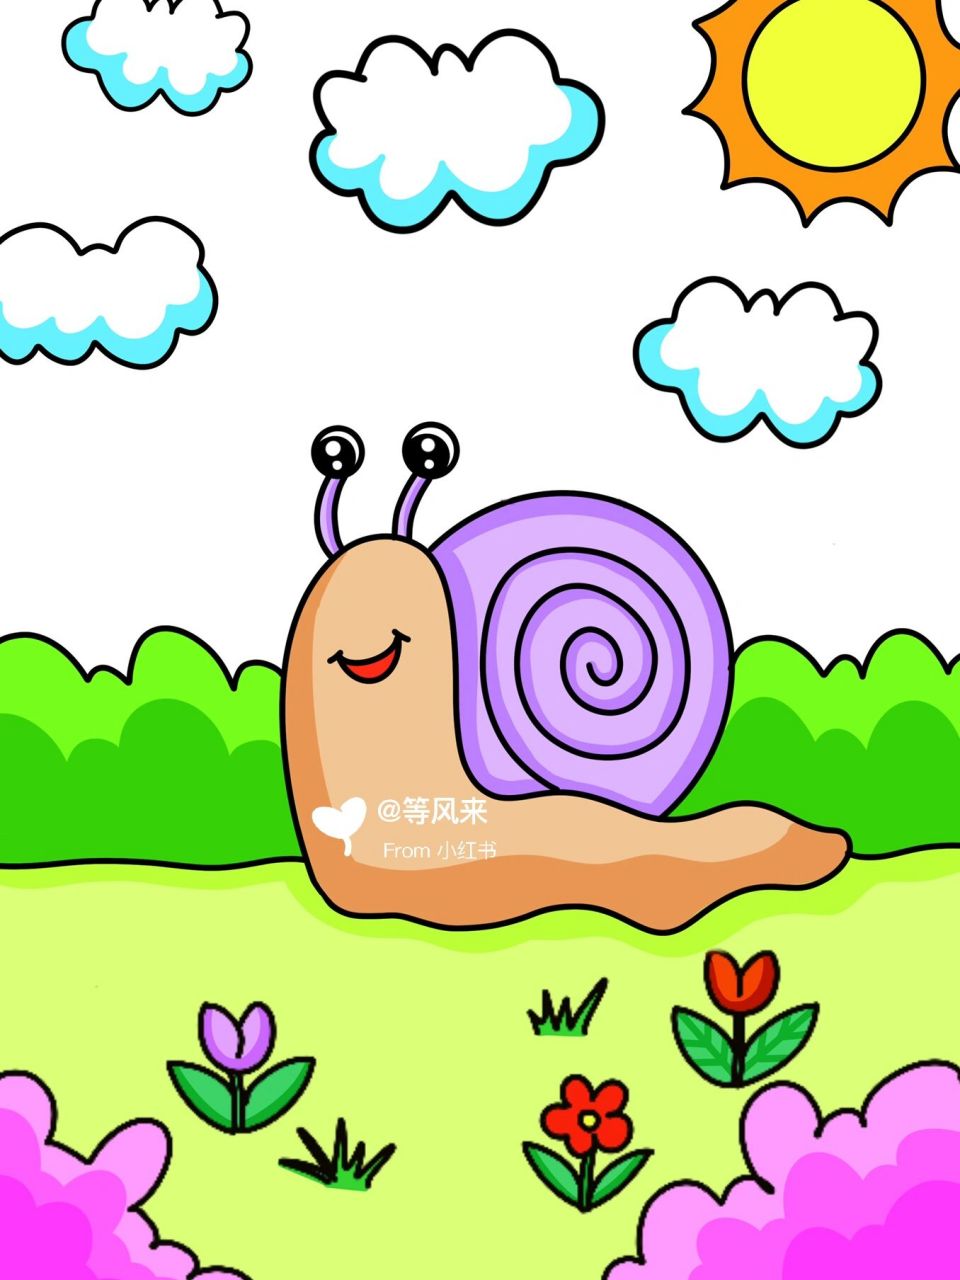 可爱的小蜗牛96儿童创意画有线稿 